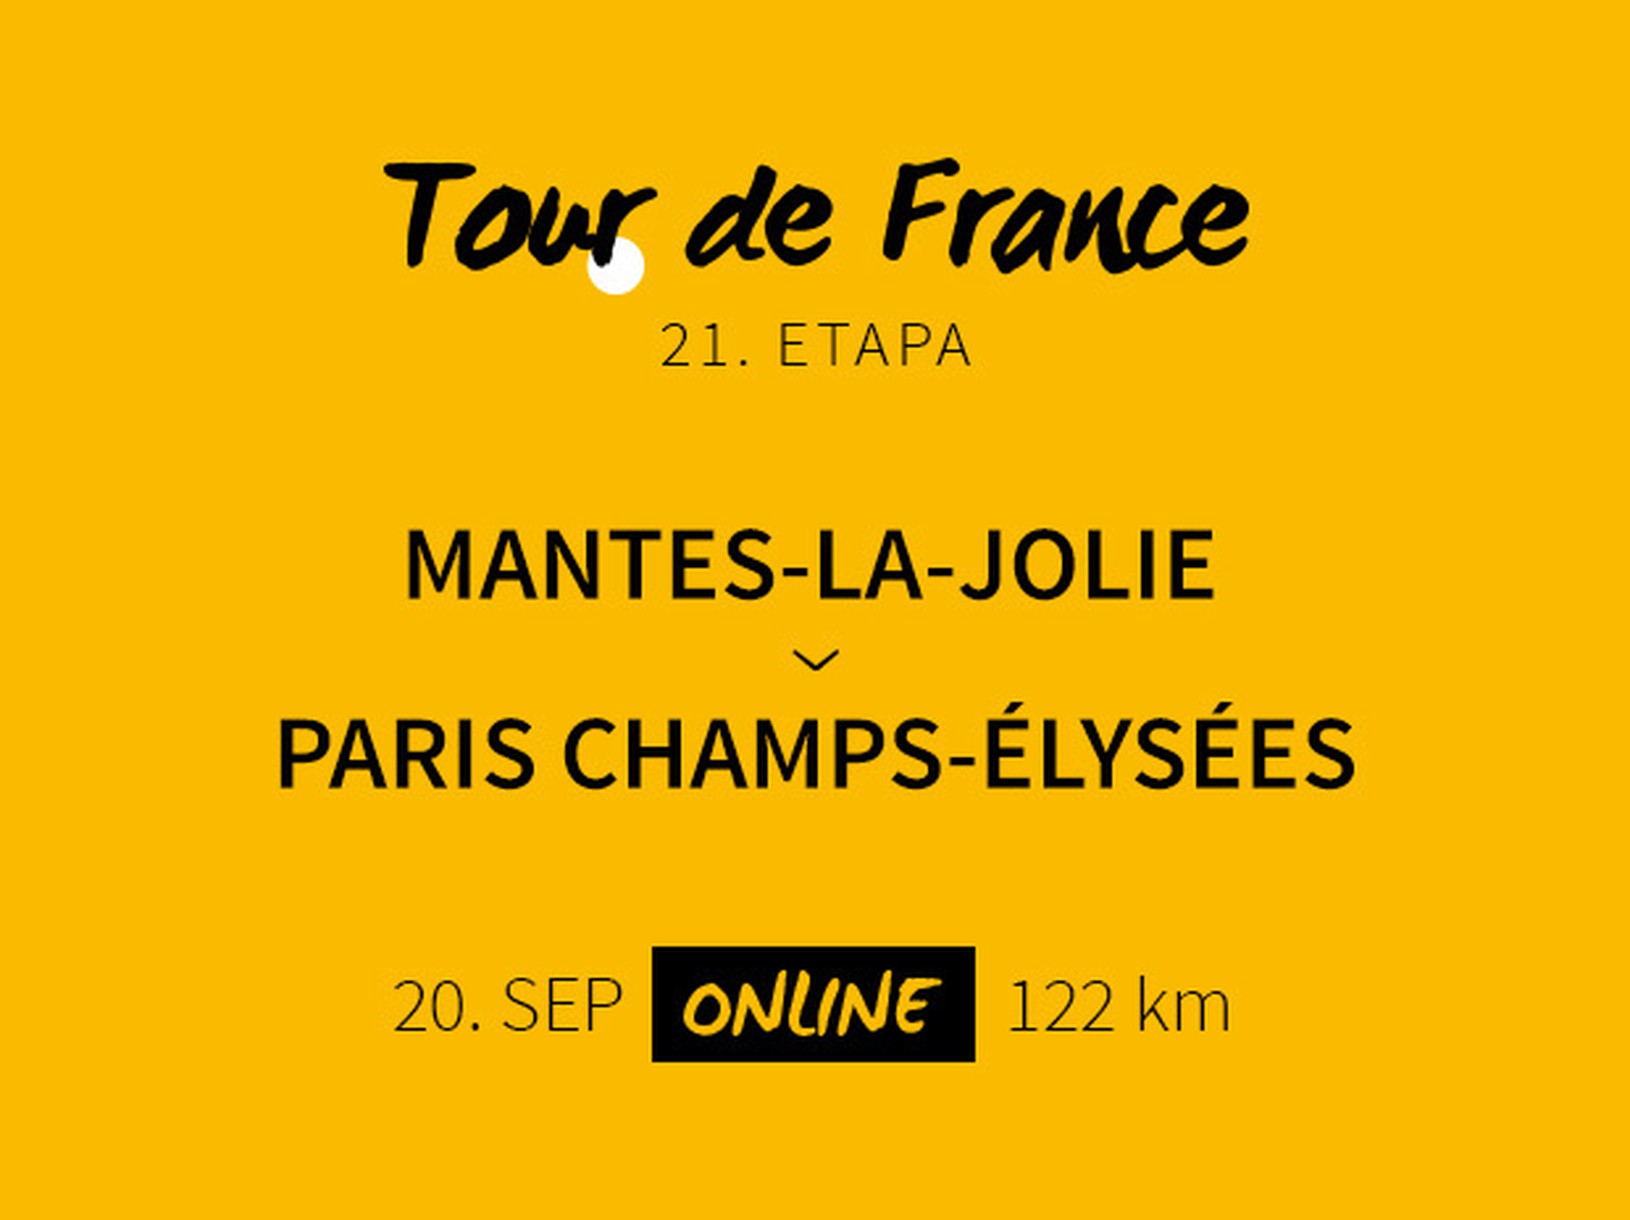 Tour de France 2020: